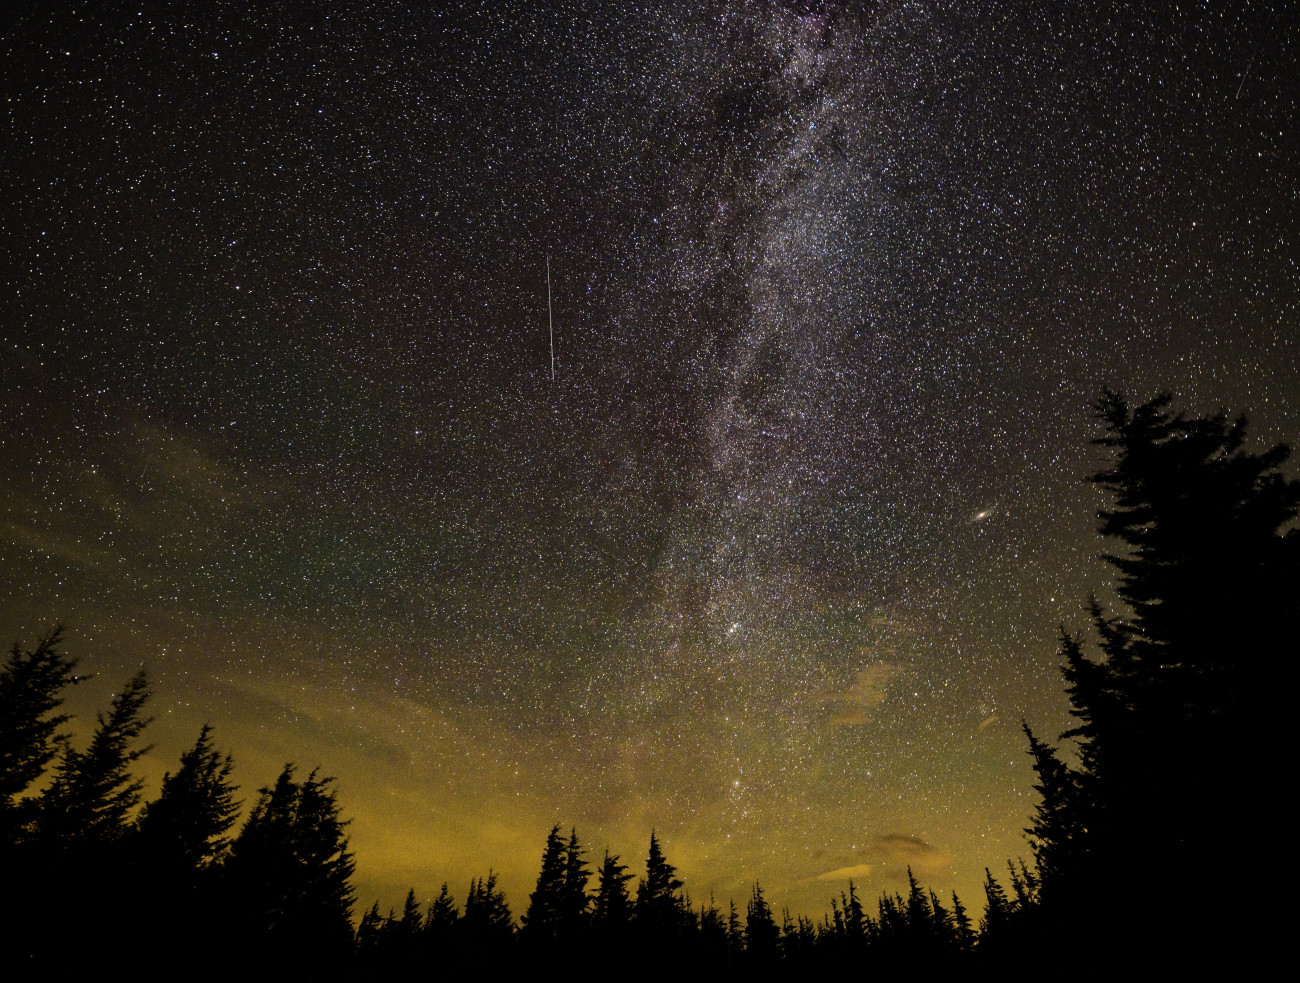 Spruce Knob, 2021. augusztus 11.
A NASA által közreadott kép a Perseidák meteorrajról a Tejút közelében, Nugat-Virginia legmagasabb pontja, a Spruce Mountain hegygerinc 1482 méter magas Spruce Knob nevű csúcsa felett 2021. augusztus 11-én. A Perseidák az egyik legismertebb, sűrű csillaghullást előidéző meteorraj. A raj sok apró porszemcséből áll, amelyek a földi légkörben nagy sebességük következtében felhevülnek és elégnek.
MTI/EPA/NASA/Bill Ingals